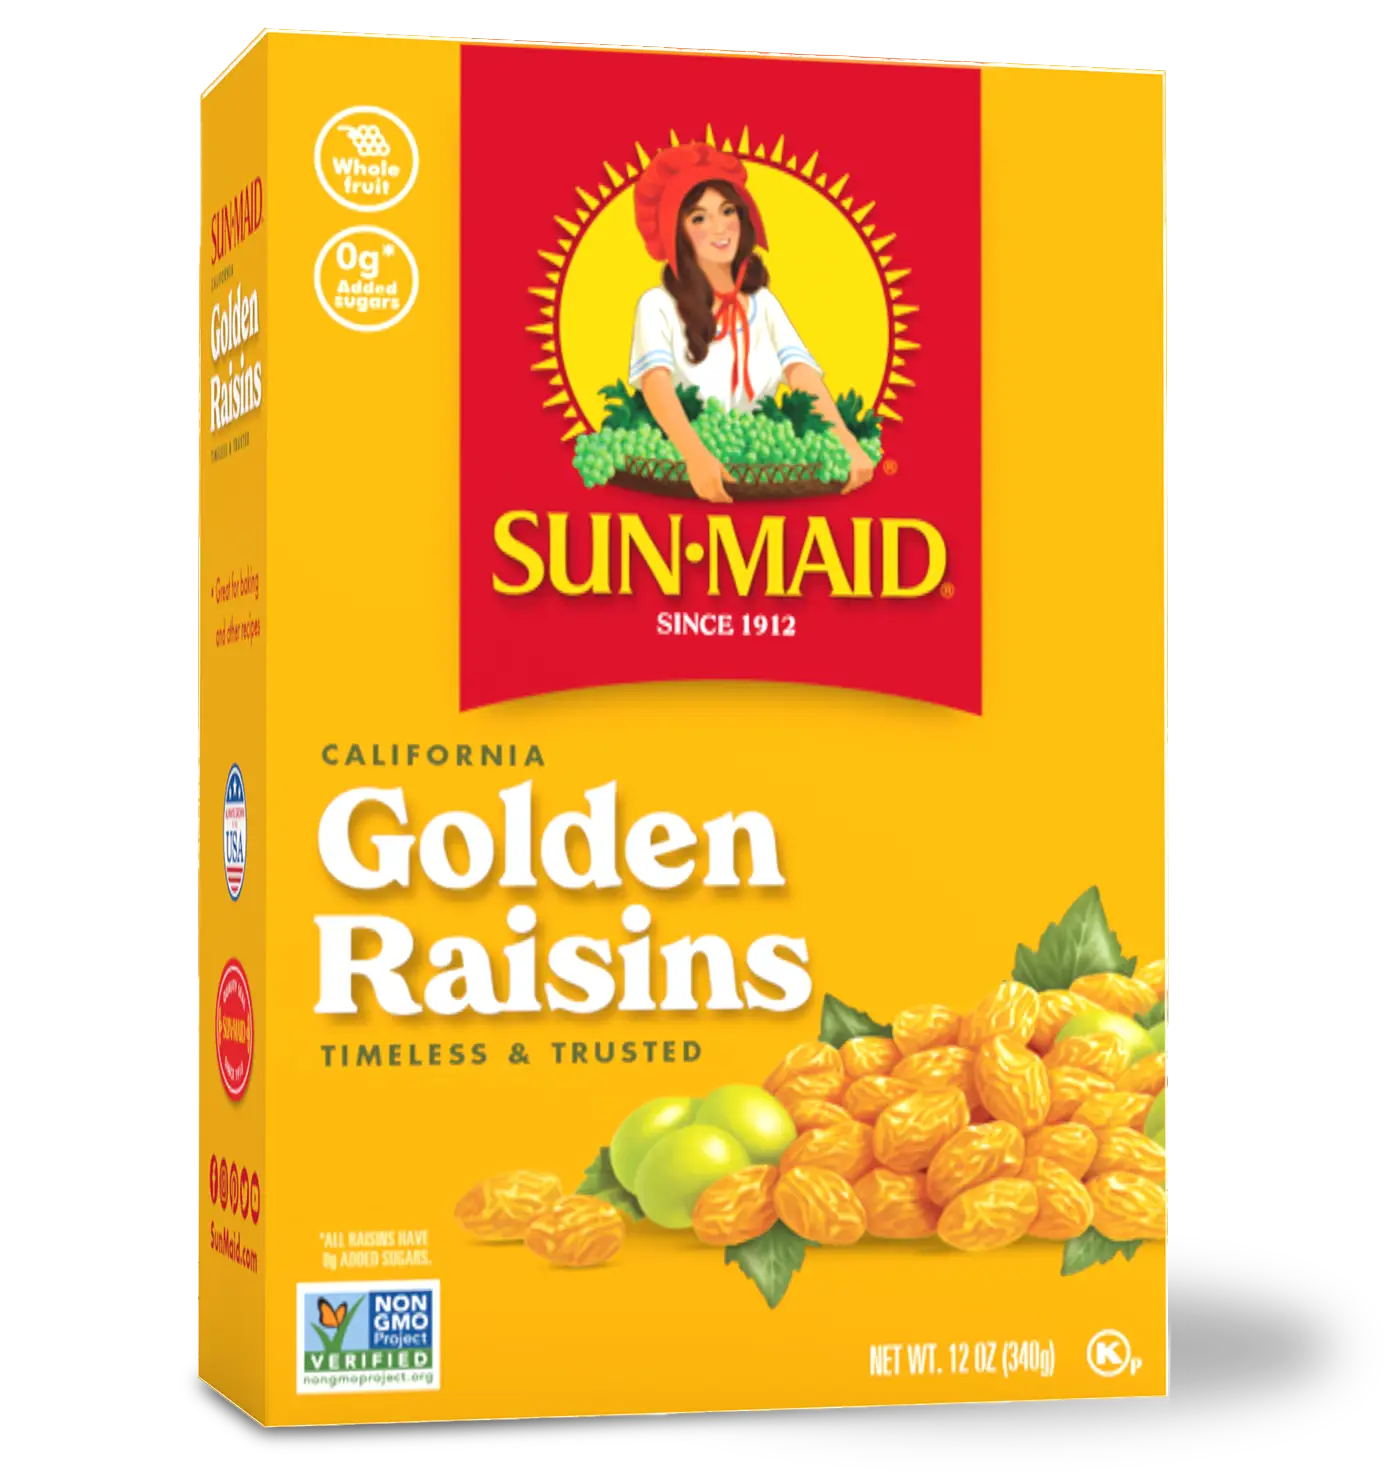 Golden Raisins package